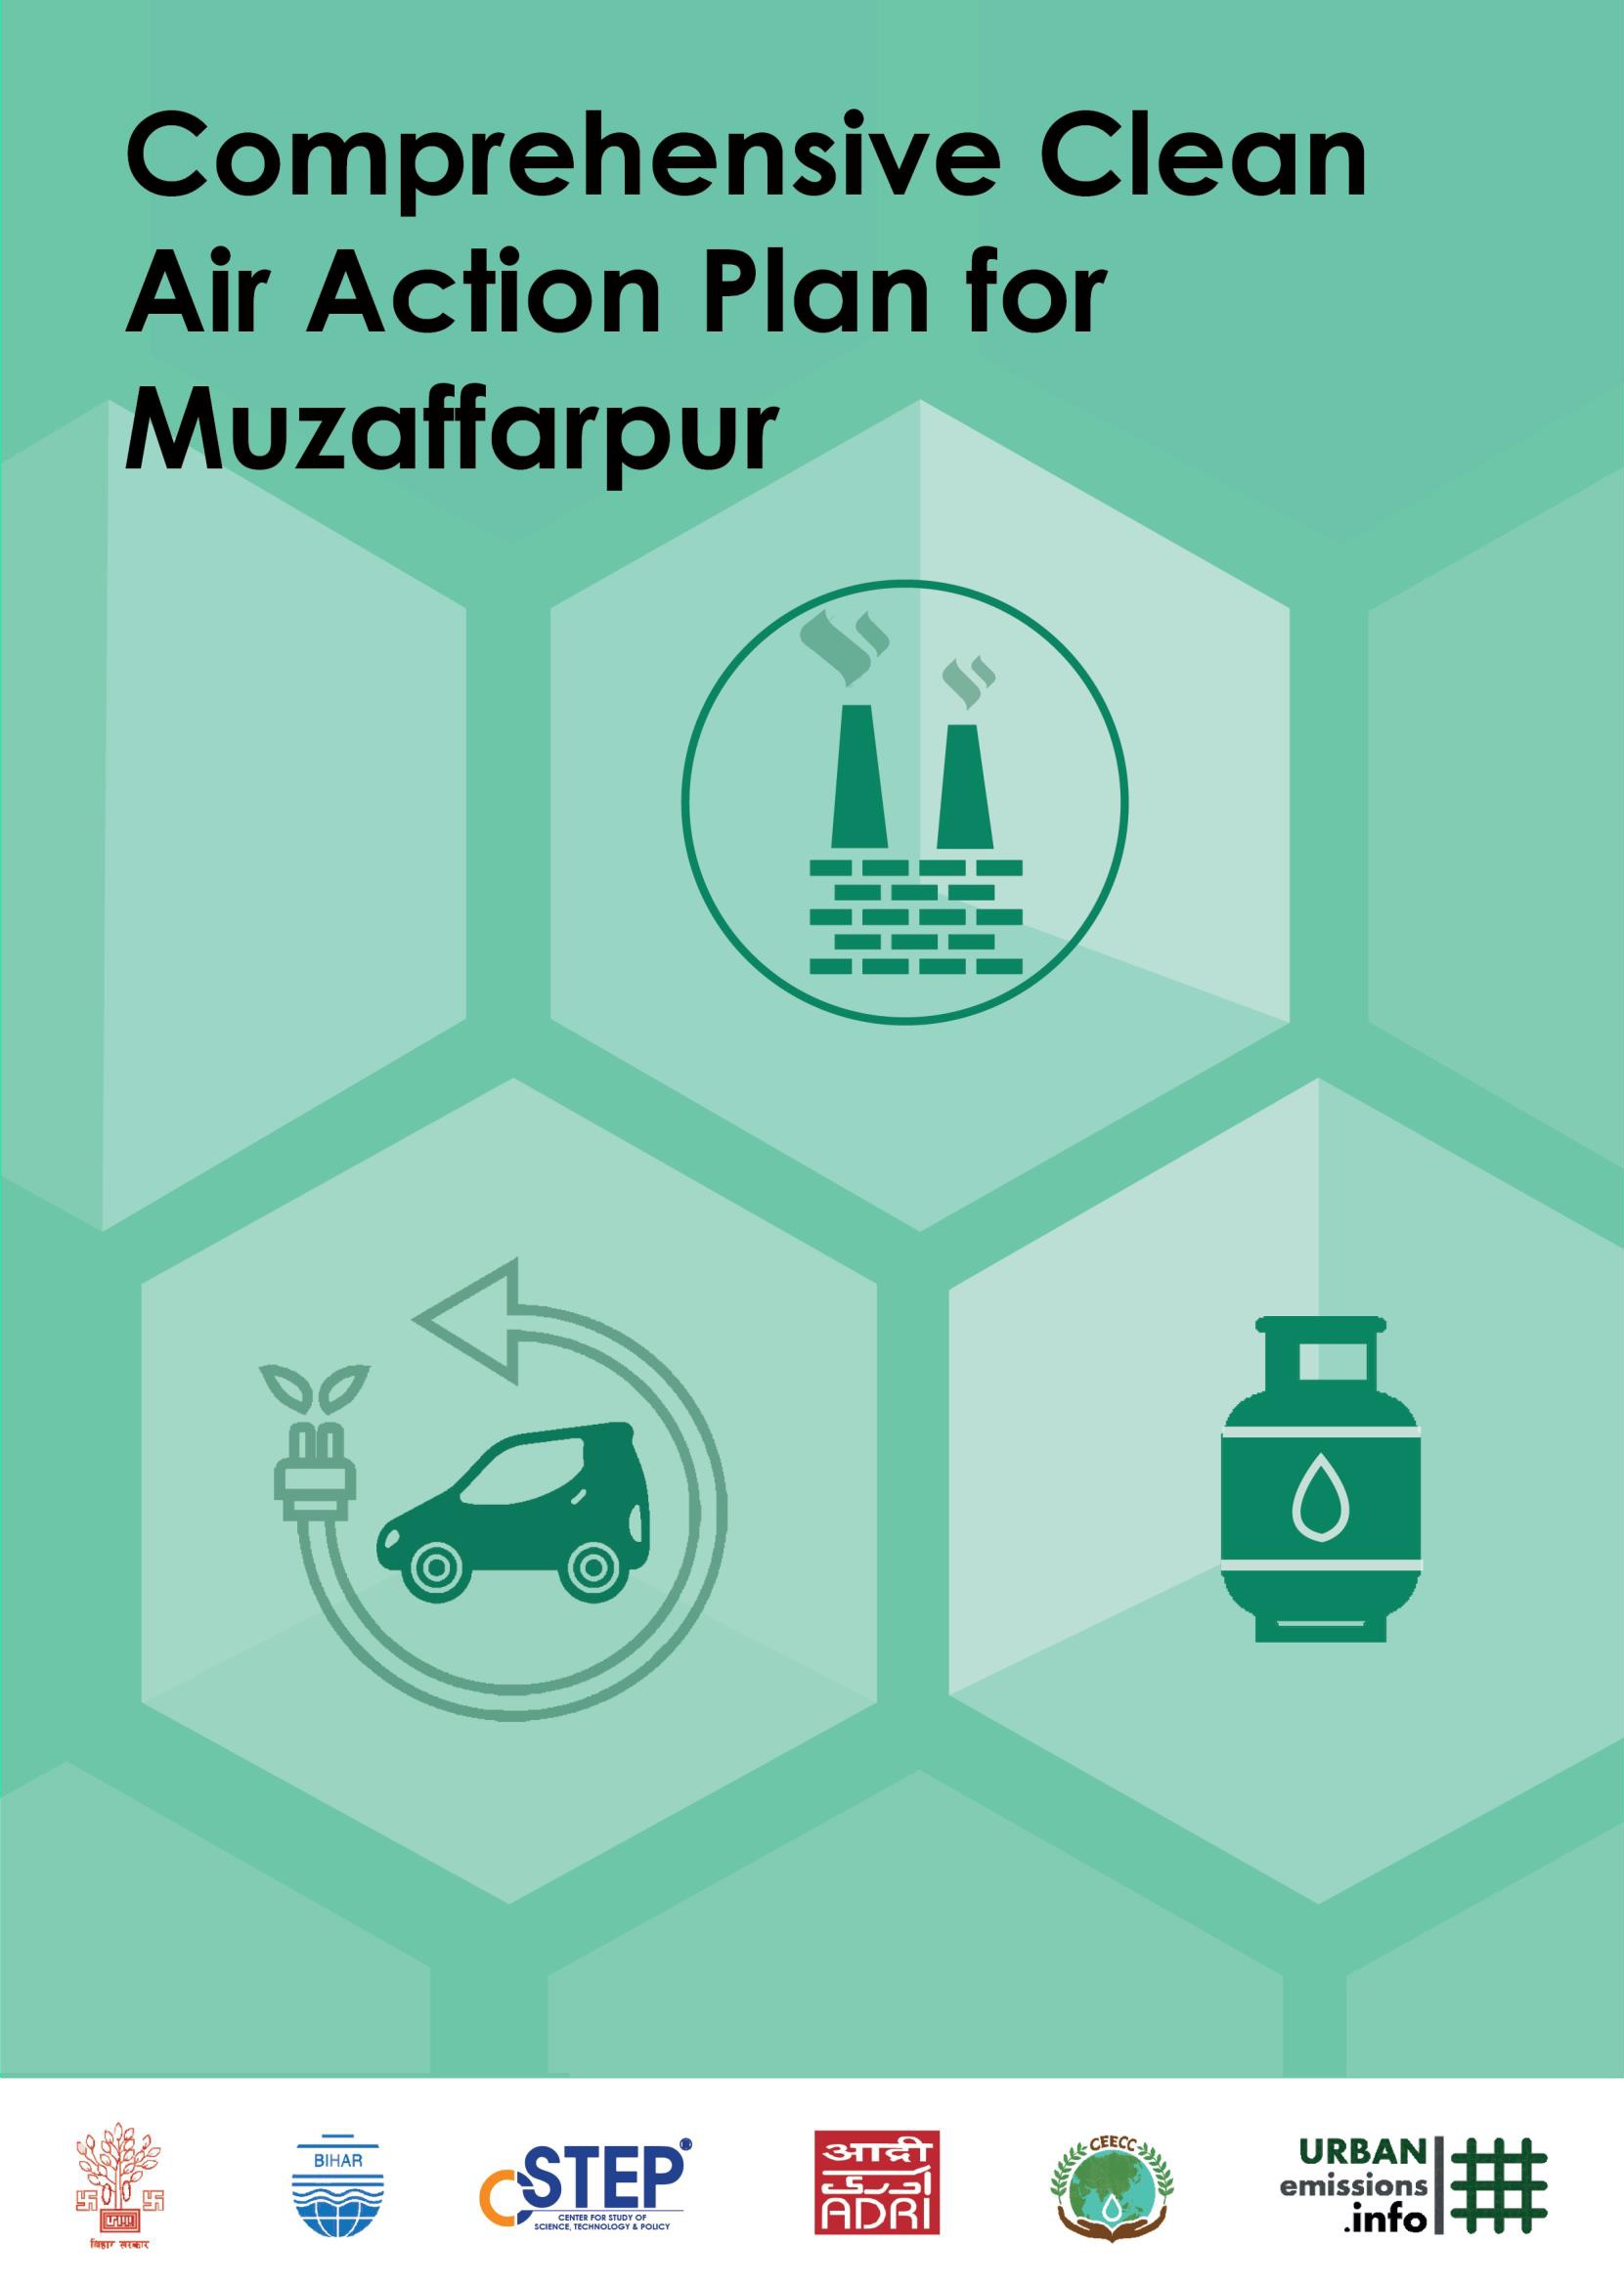 Comprehensive Clean Air Action Plan for Muzaffarpur